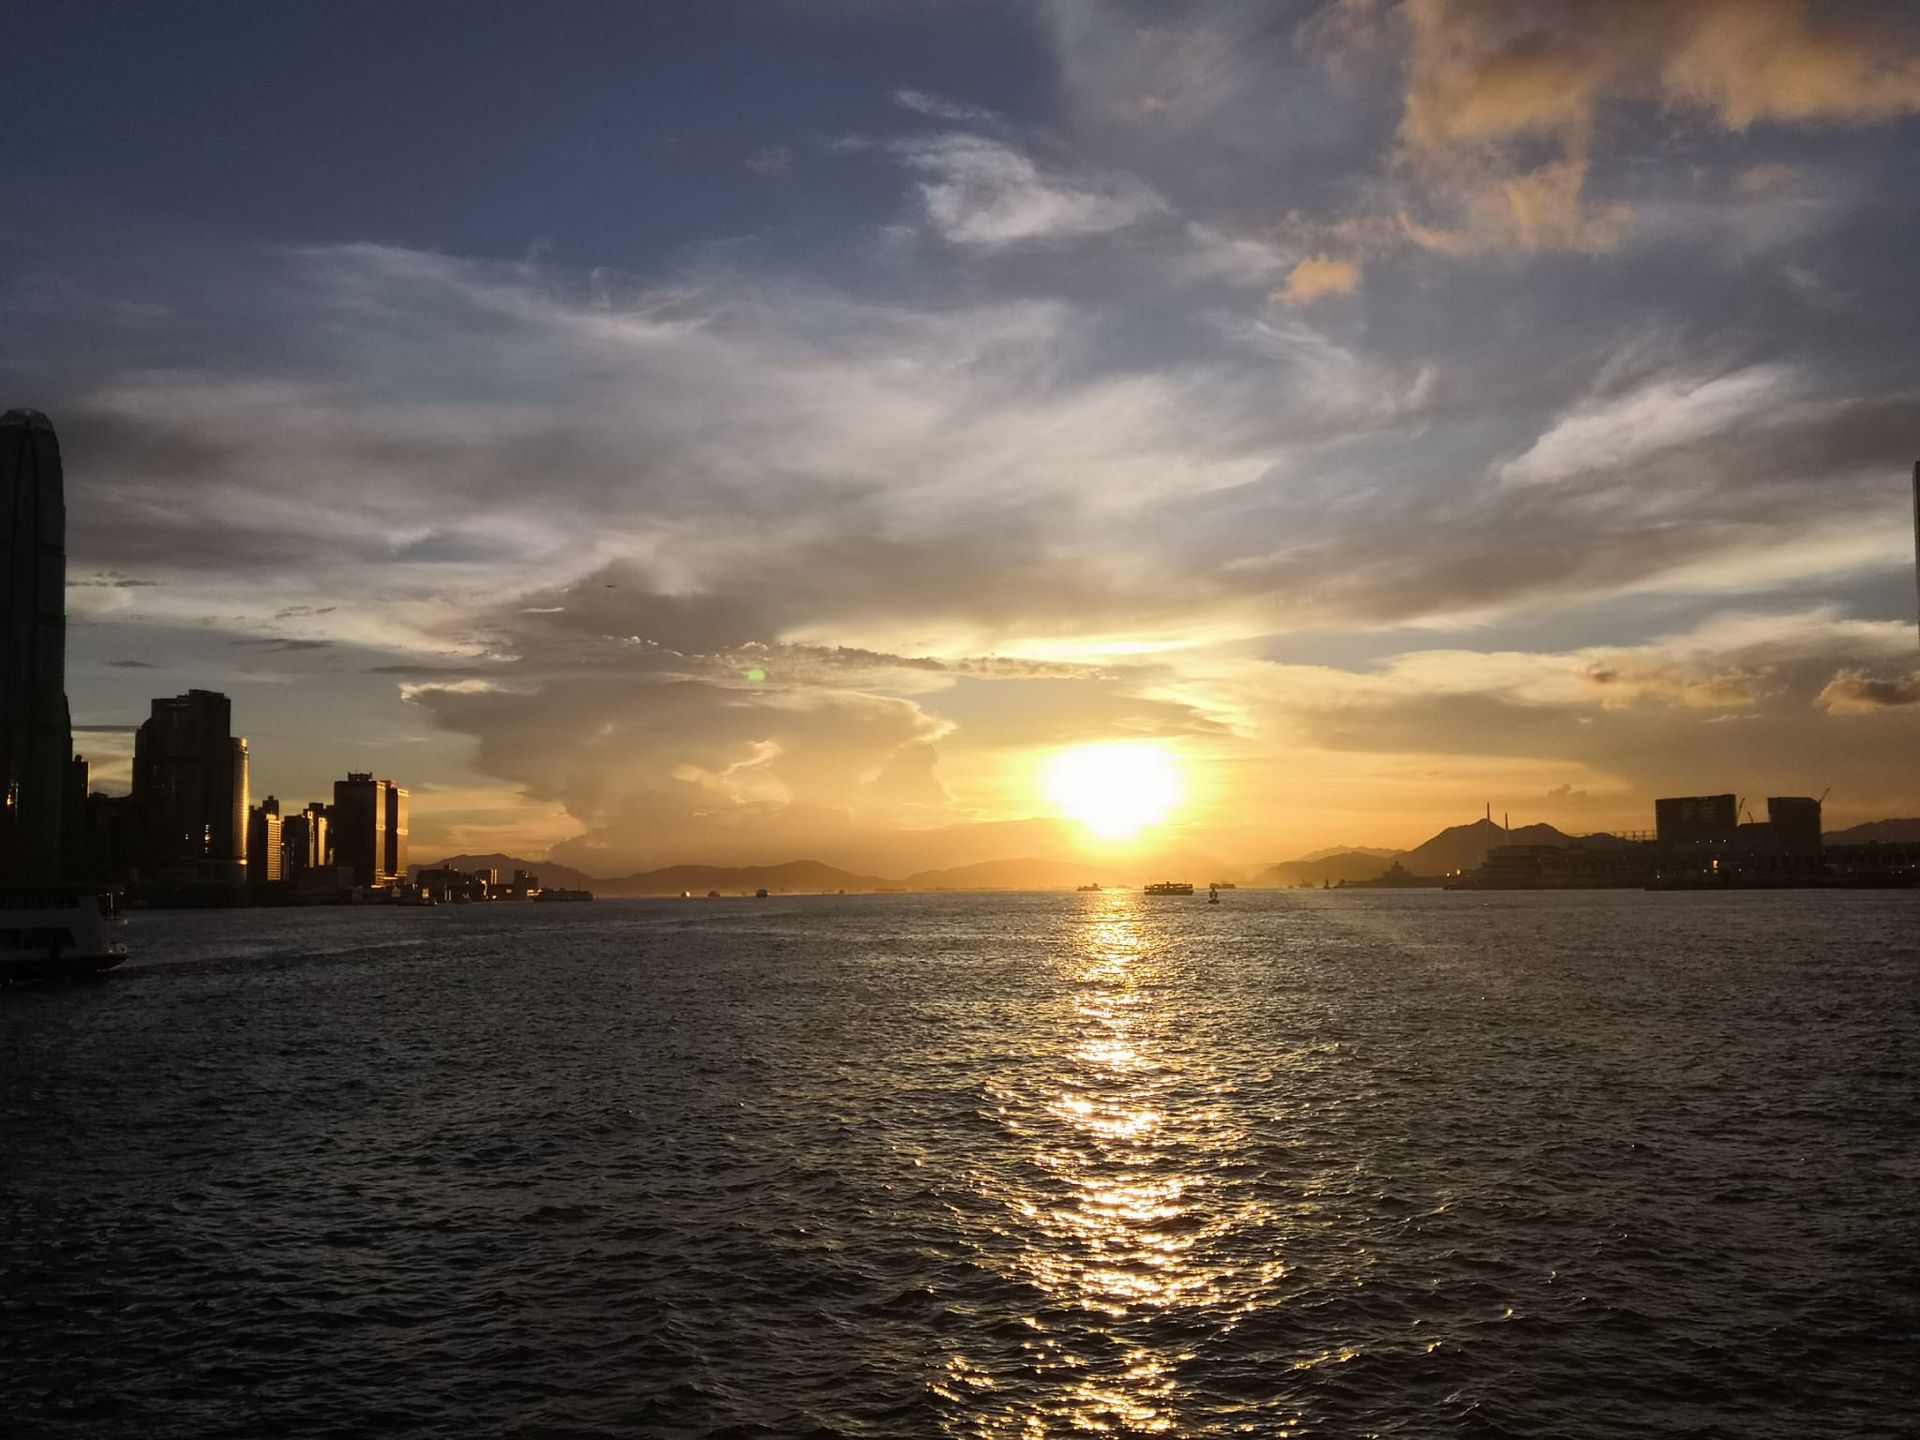 Sonnenuntergang über dem Meer bei Hongkong.